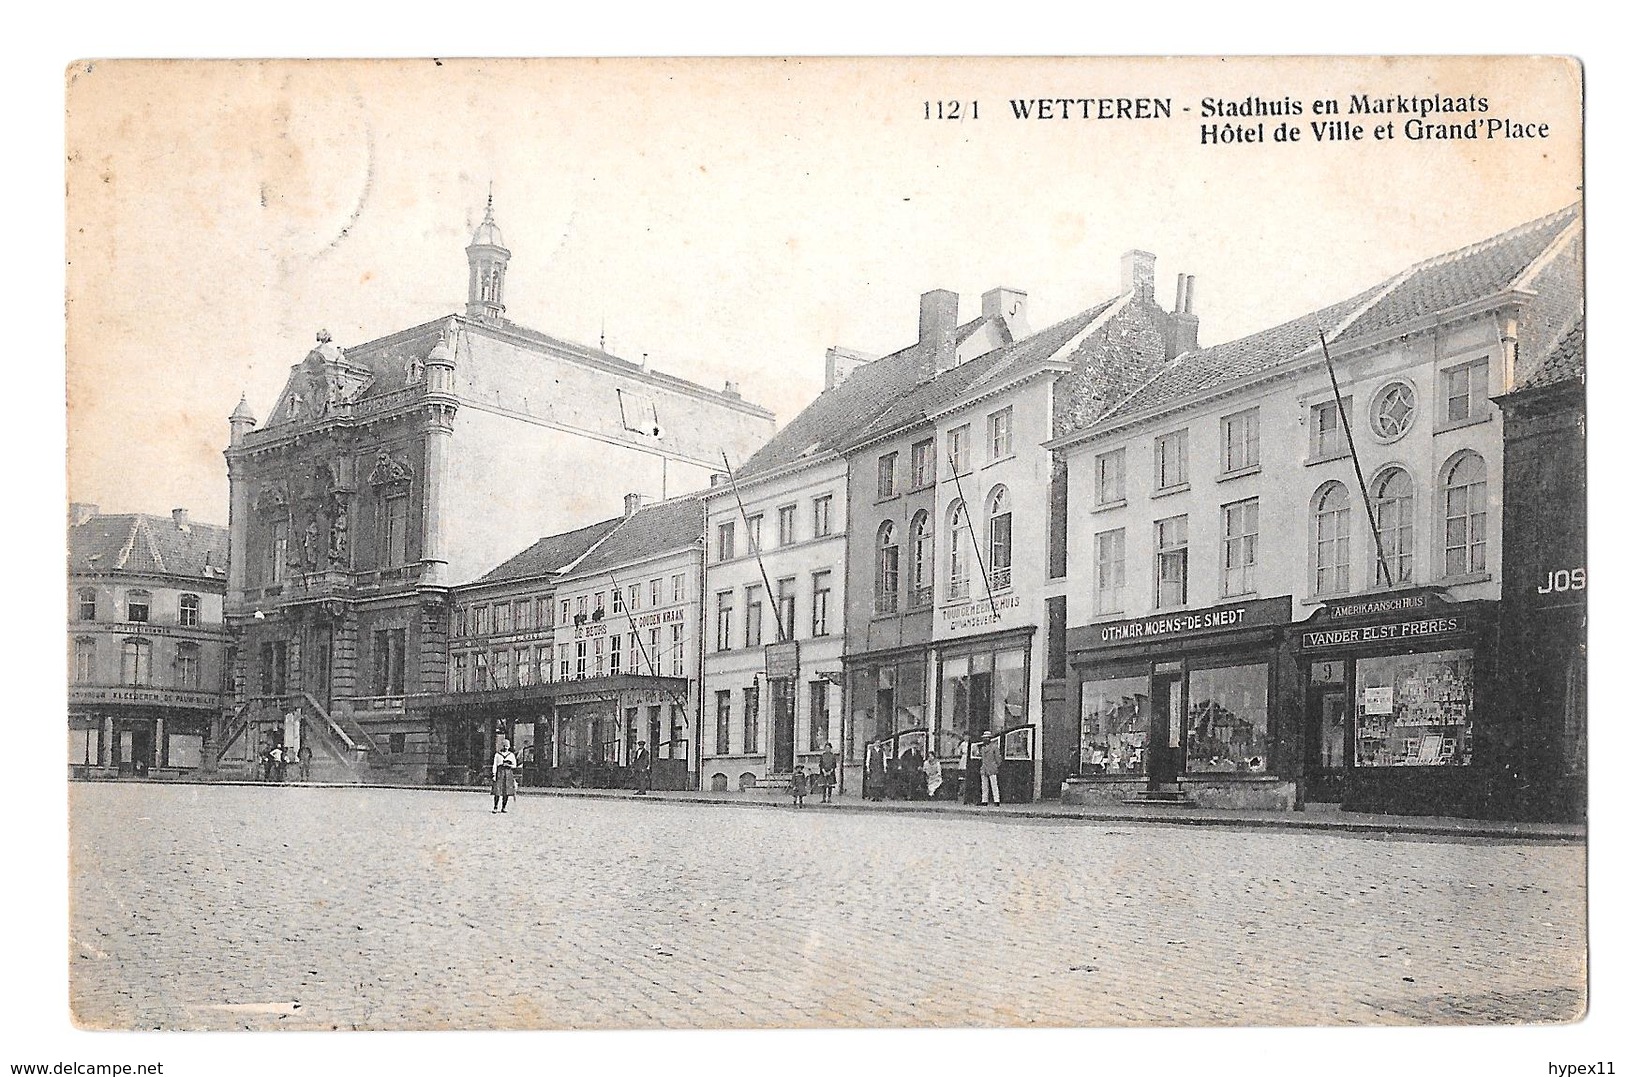 Wetteren Stadhuis En Marktplaats Hotel De Ville Et Grand Place 112/1 1921 Zeldzaam Rare Uitg Van Nieuwenhuyse - Wetteren